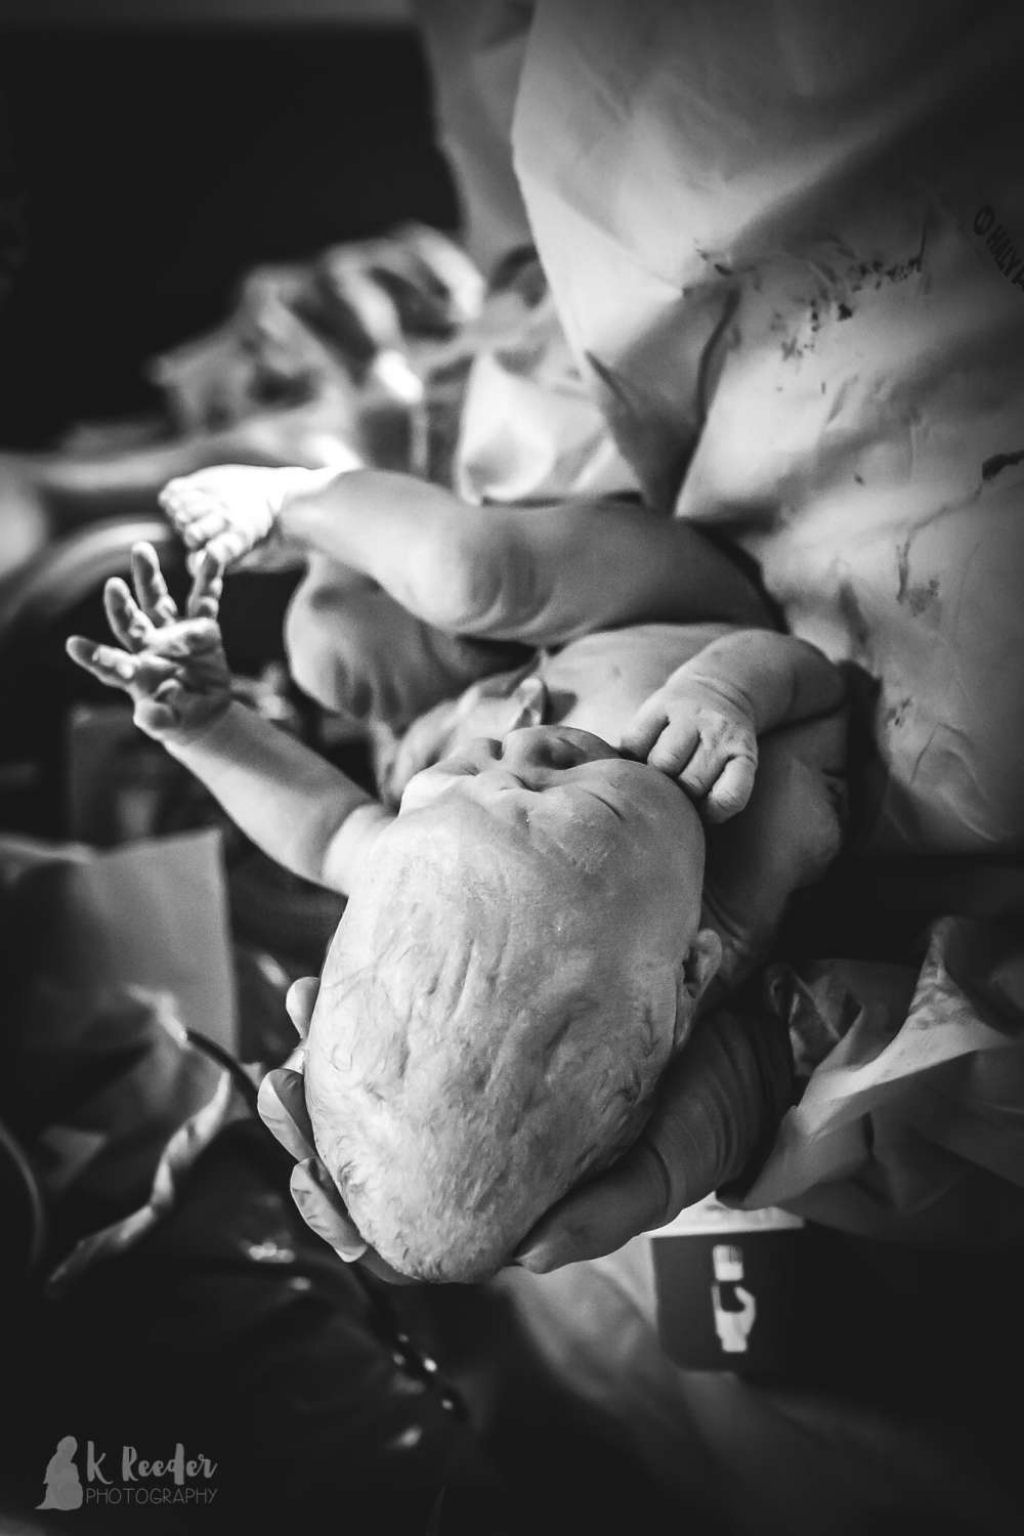 Imagens incrveis revelam o que pode acontecer com a cabea de um beb durante o parto